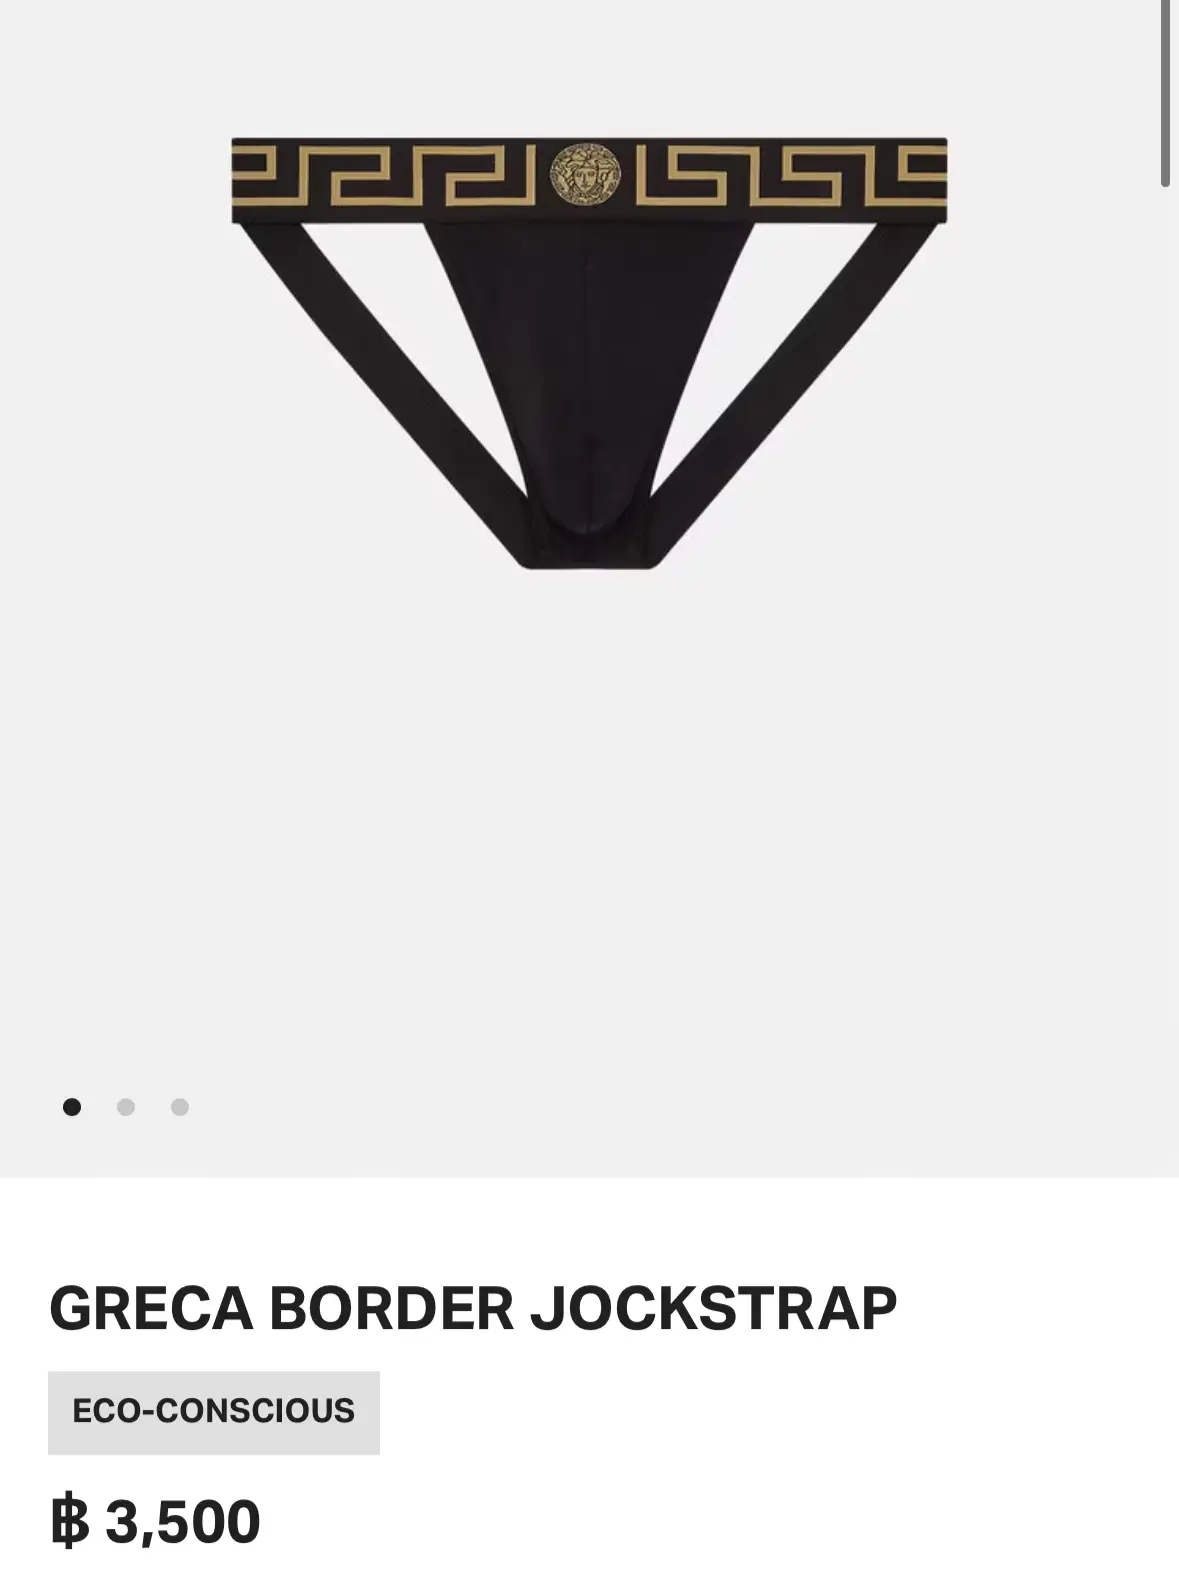 Greca Border Jockstrap